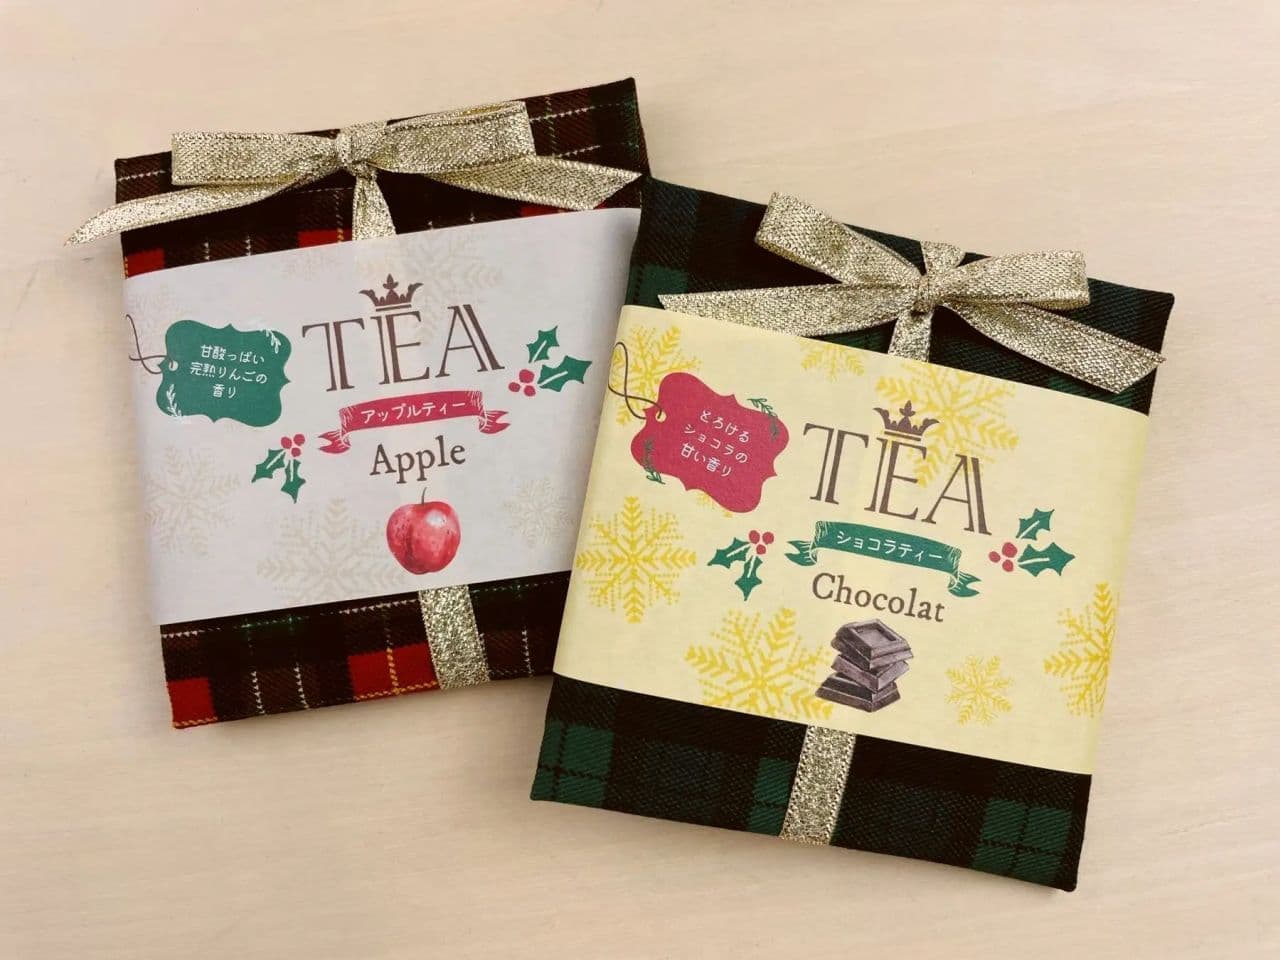 Comte de France "Flavored Tea Cloth Wrapped Apple Tea/Chocolat Tea